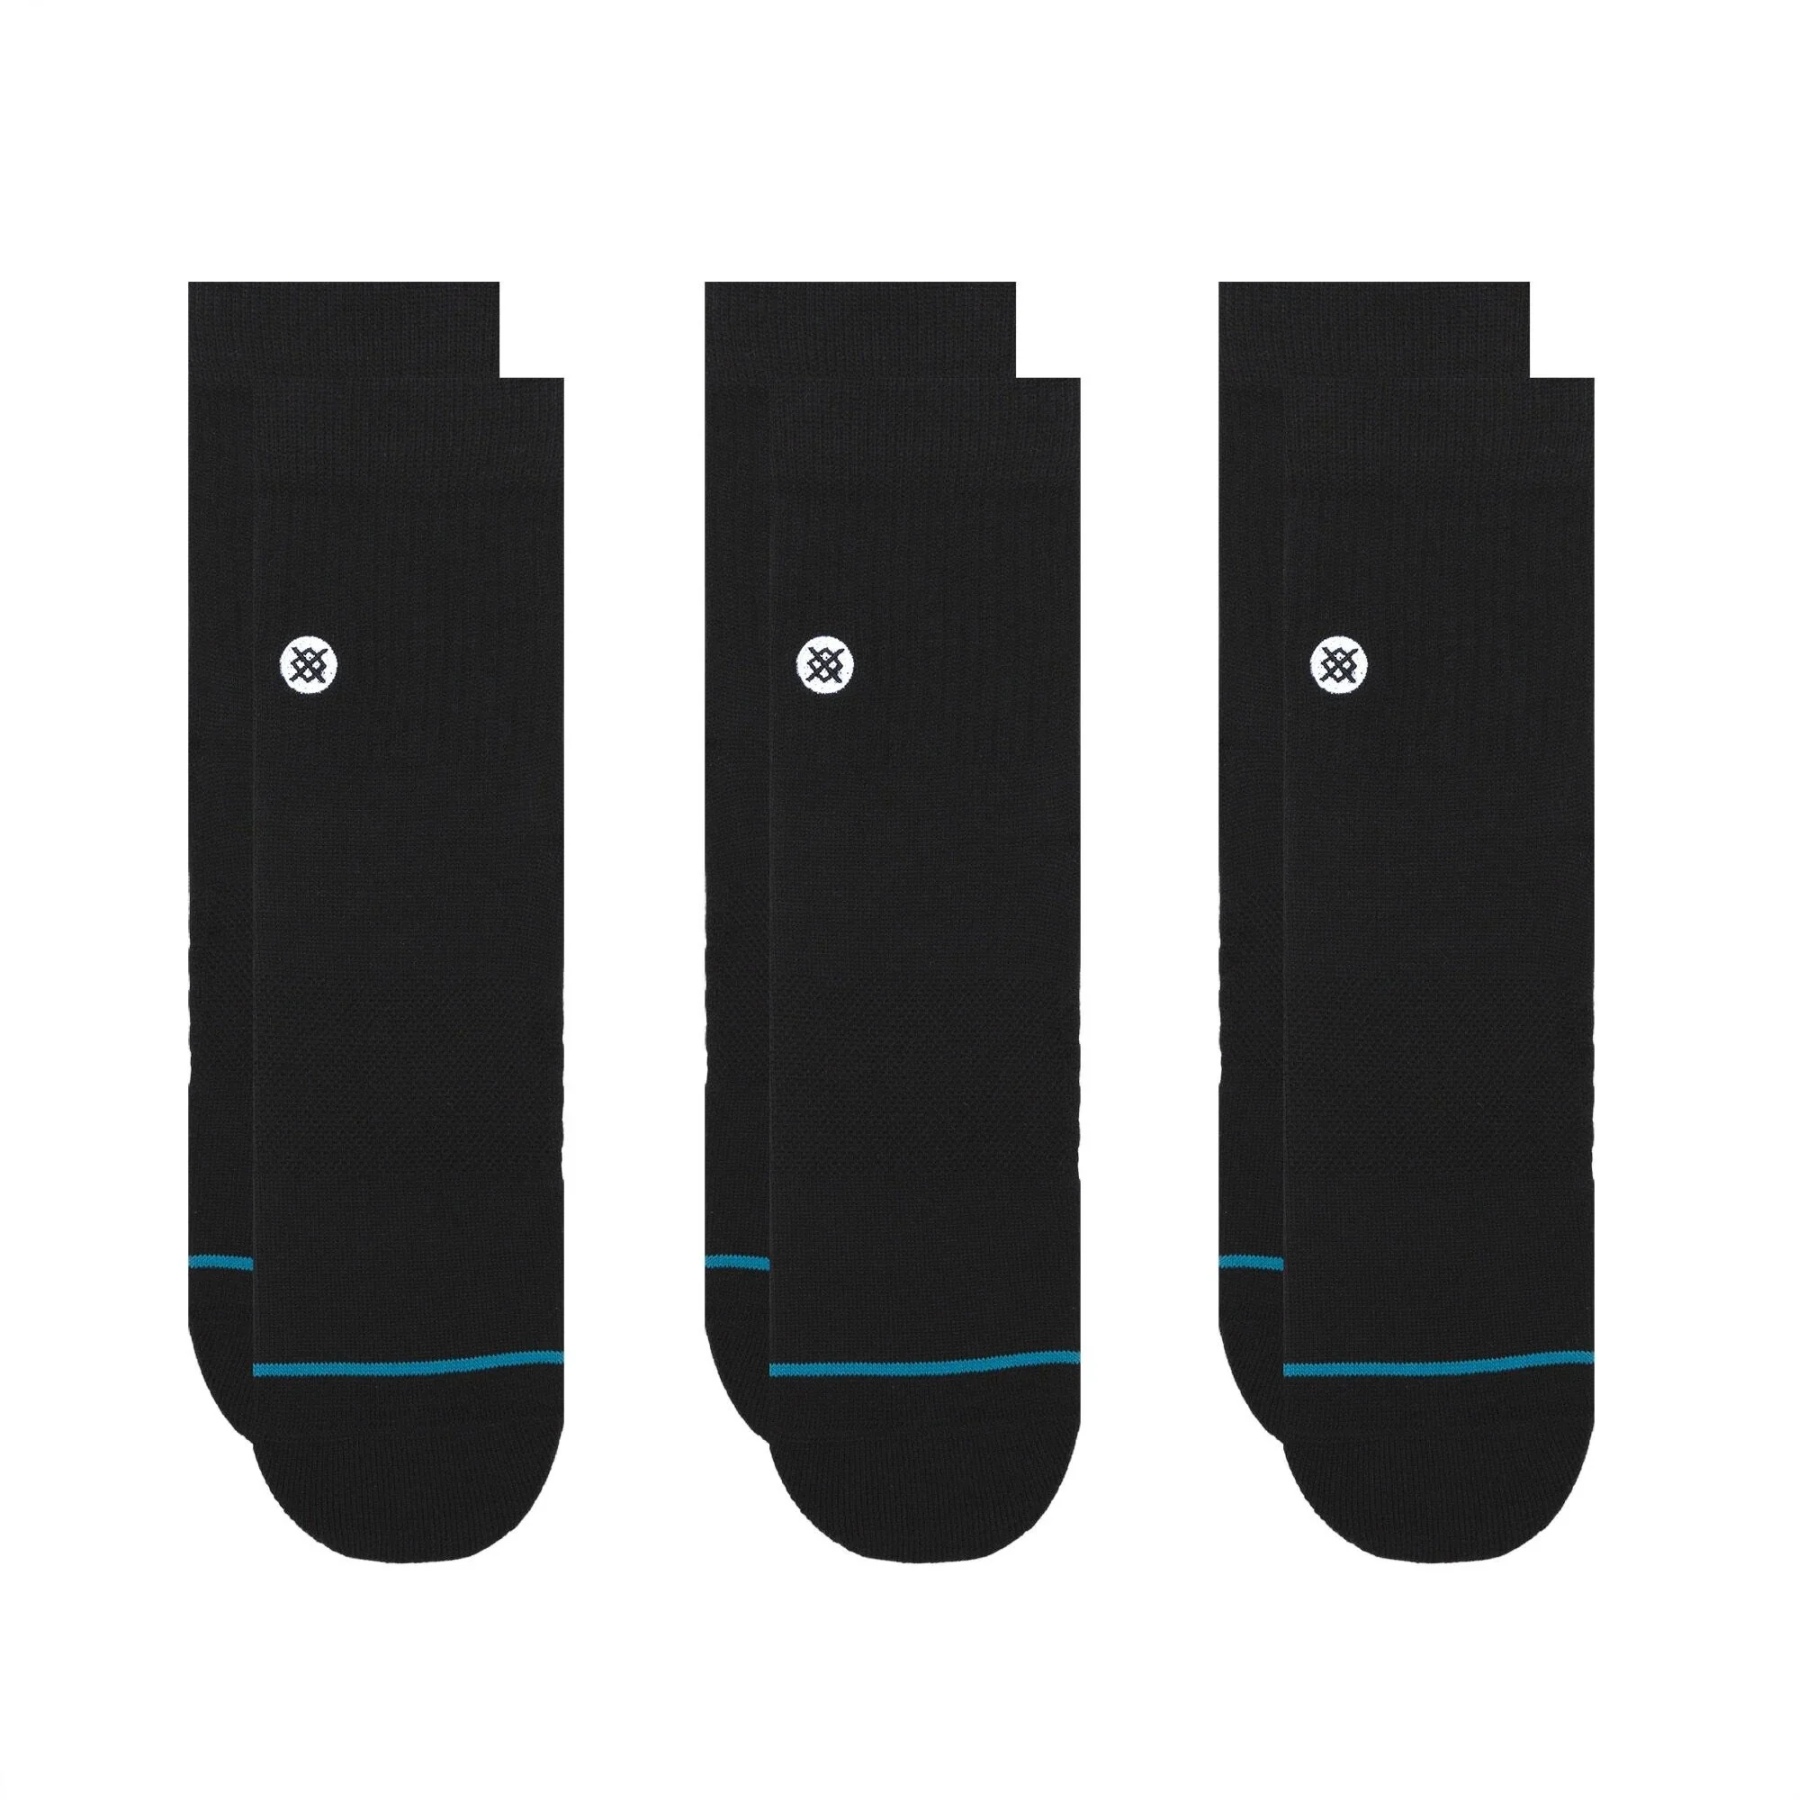 Produktbild von Stance Icon Quarter Socken Unisex - 3er Pack - schwarz